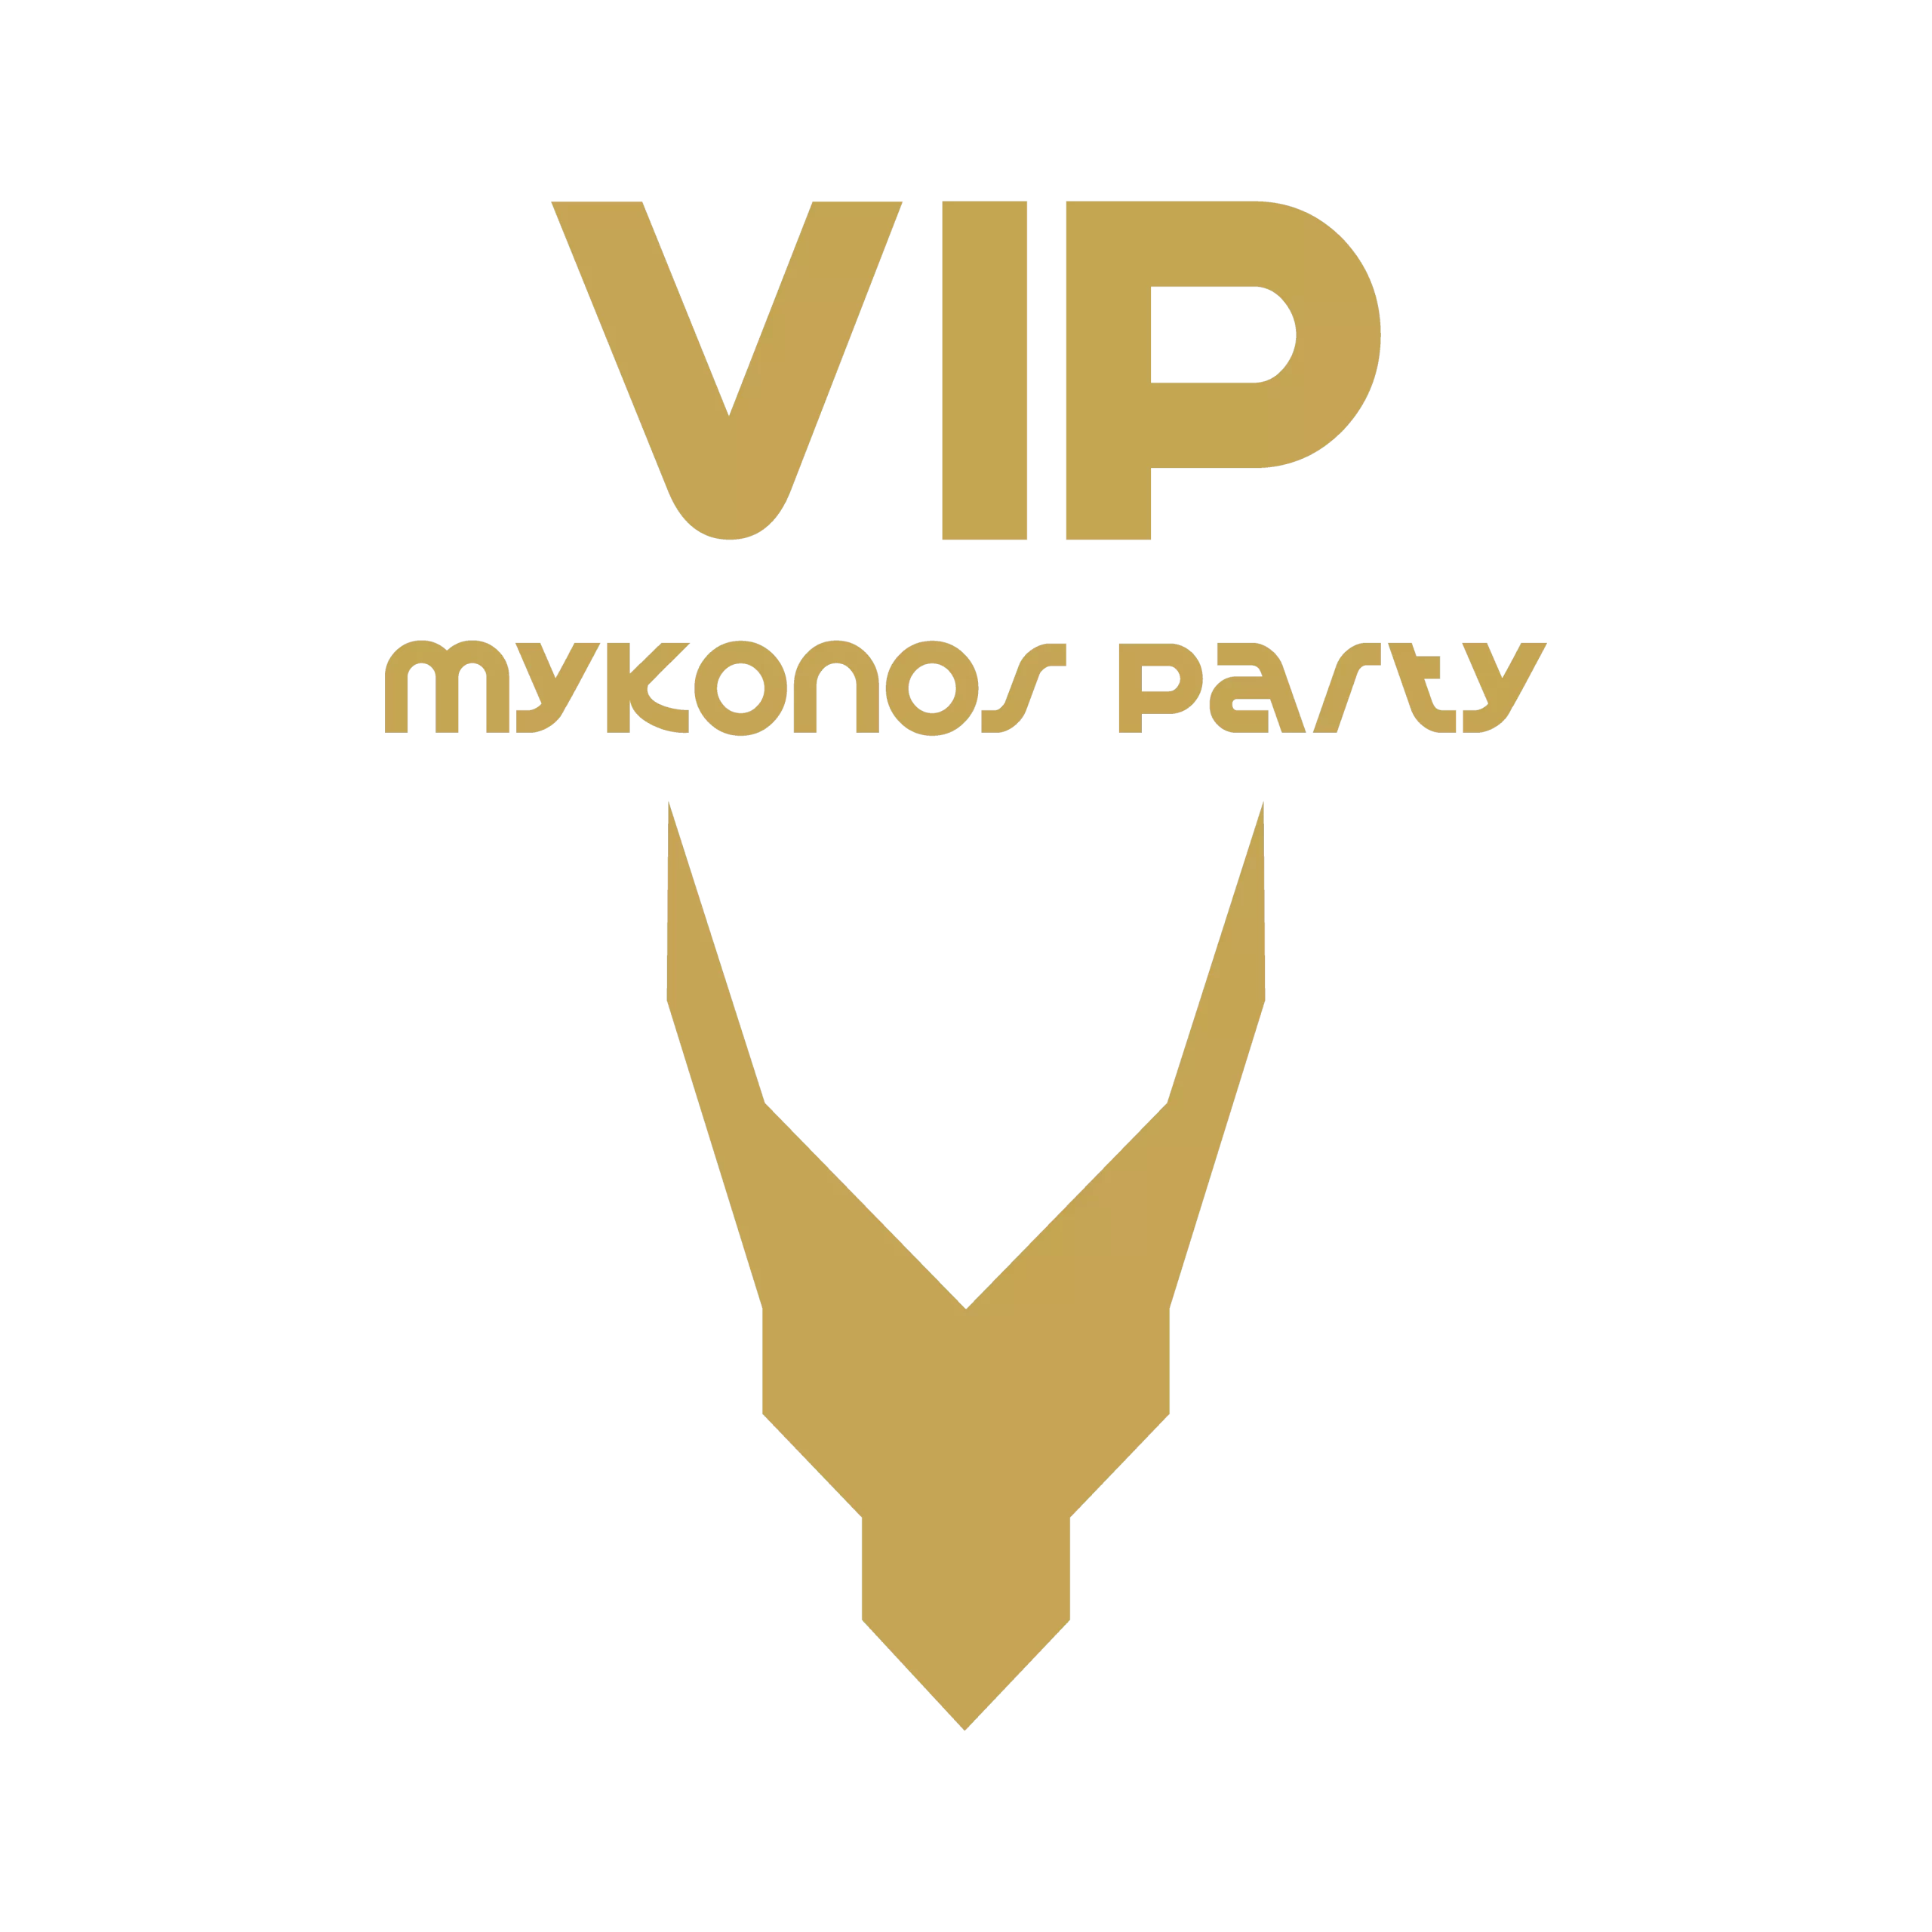 VIP mykonos party